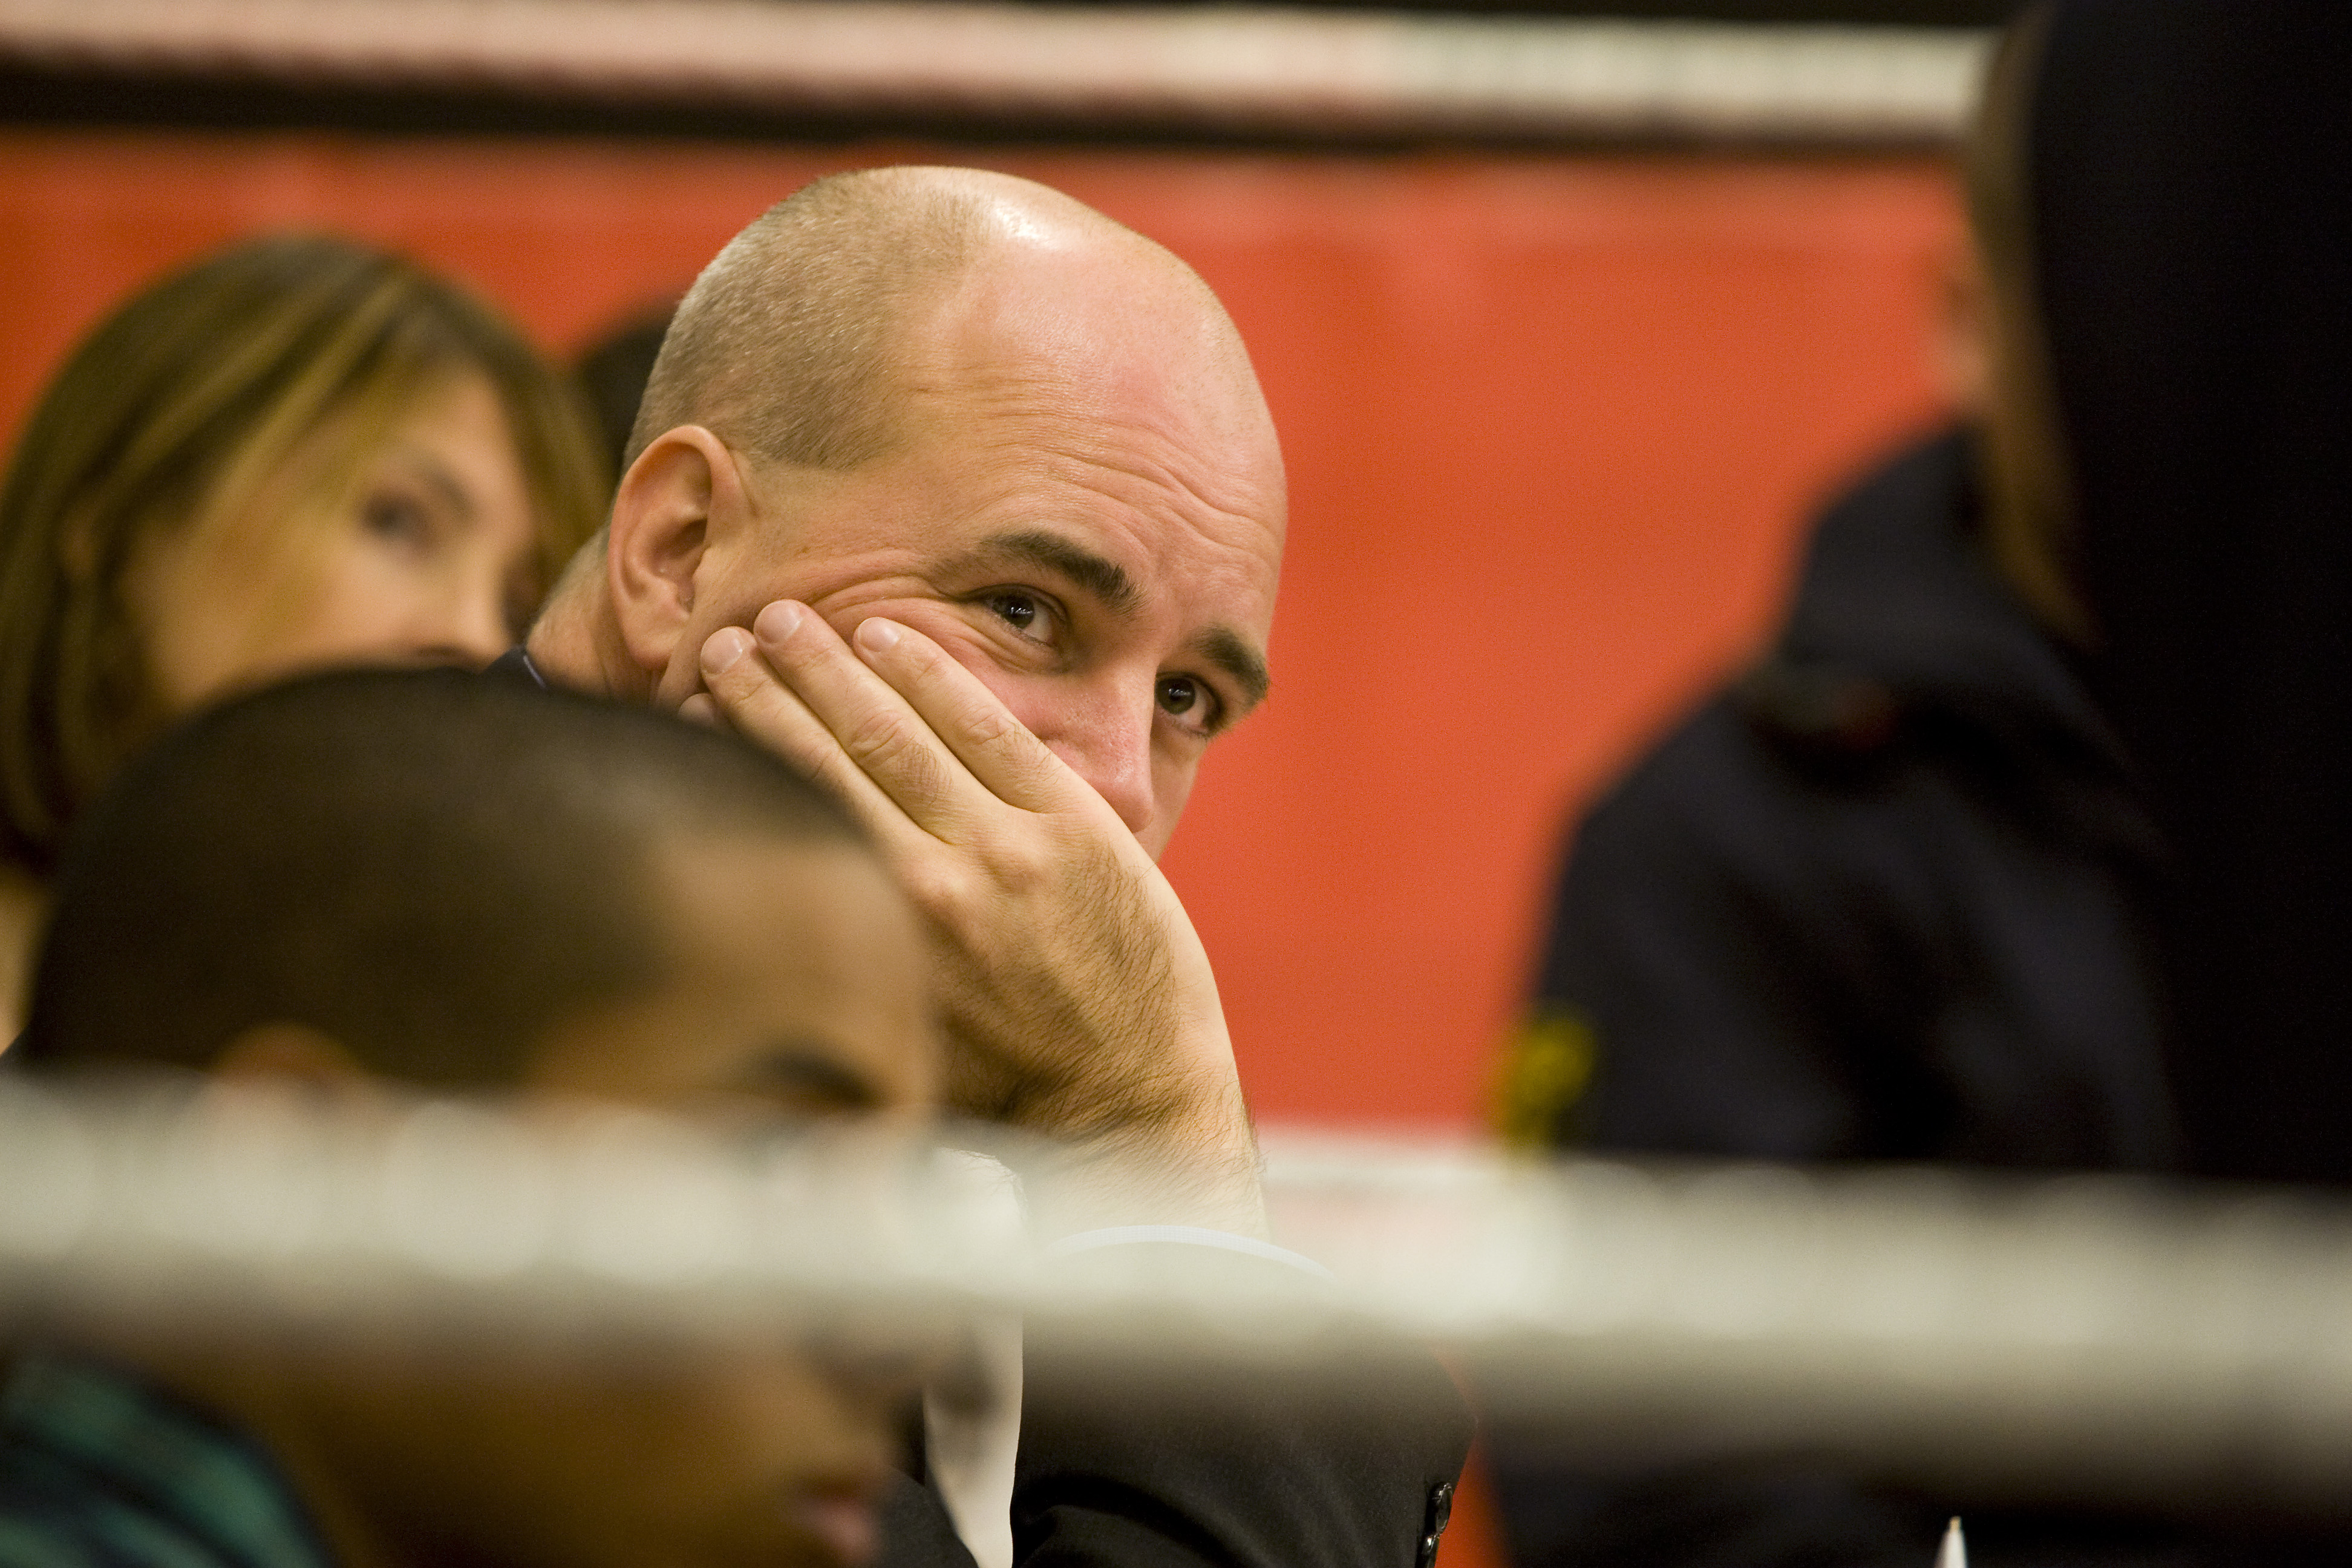 Jobb, Riksdagsvalet 2010, SSU, Fredrik Reinfeldt, Ungdomsarbetslöshet